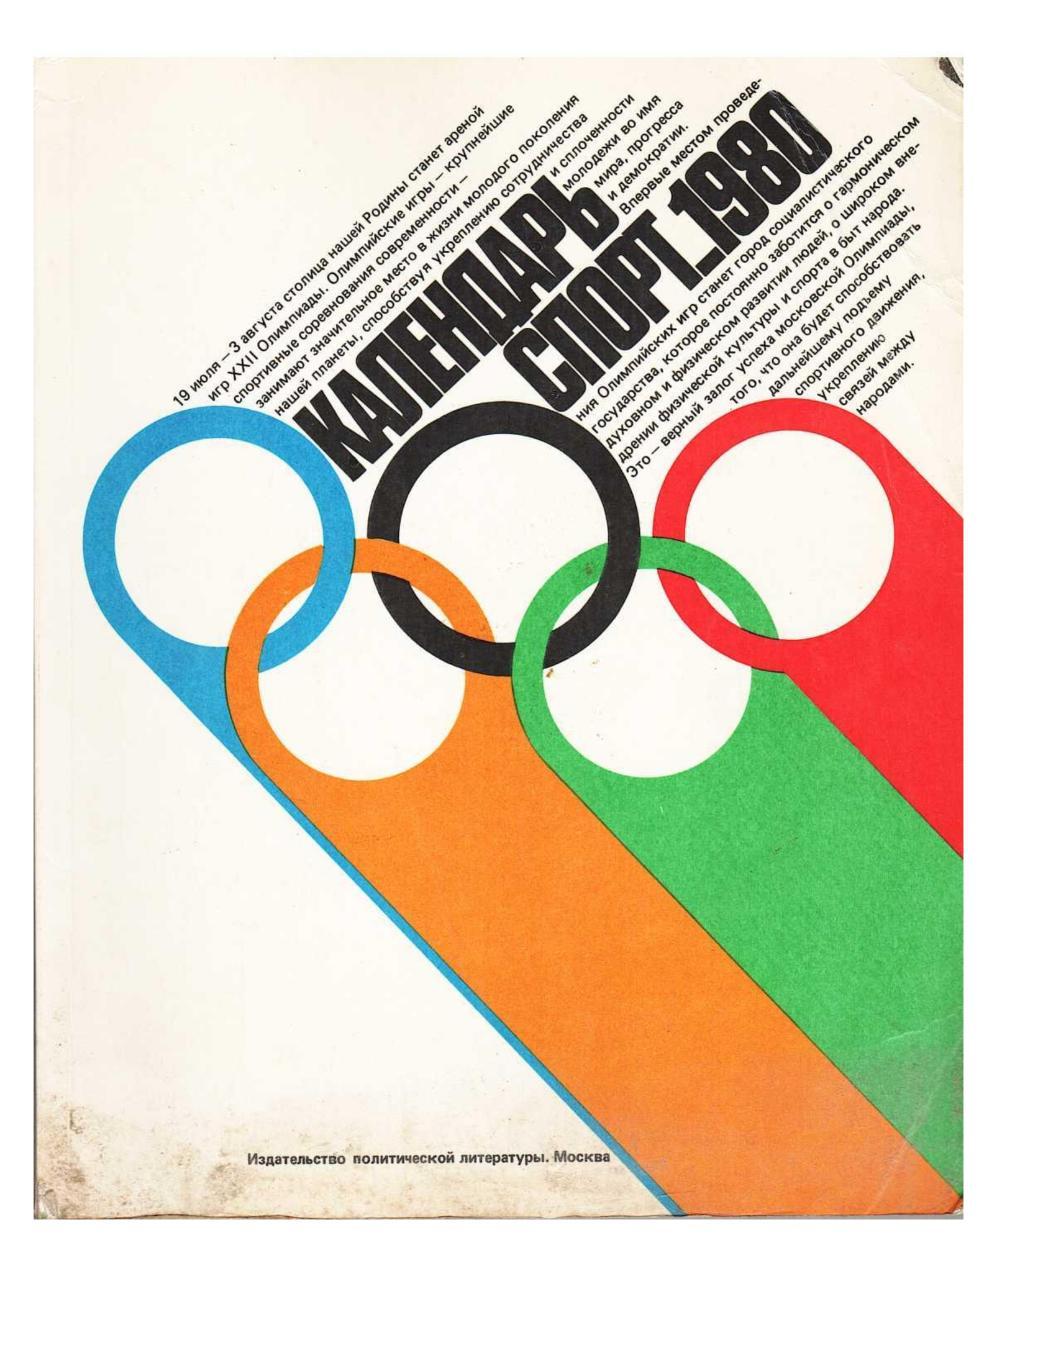 Календарь Спорт 1980. – М., 1978.